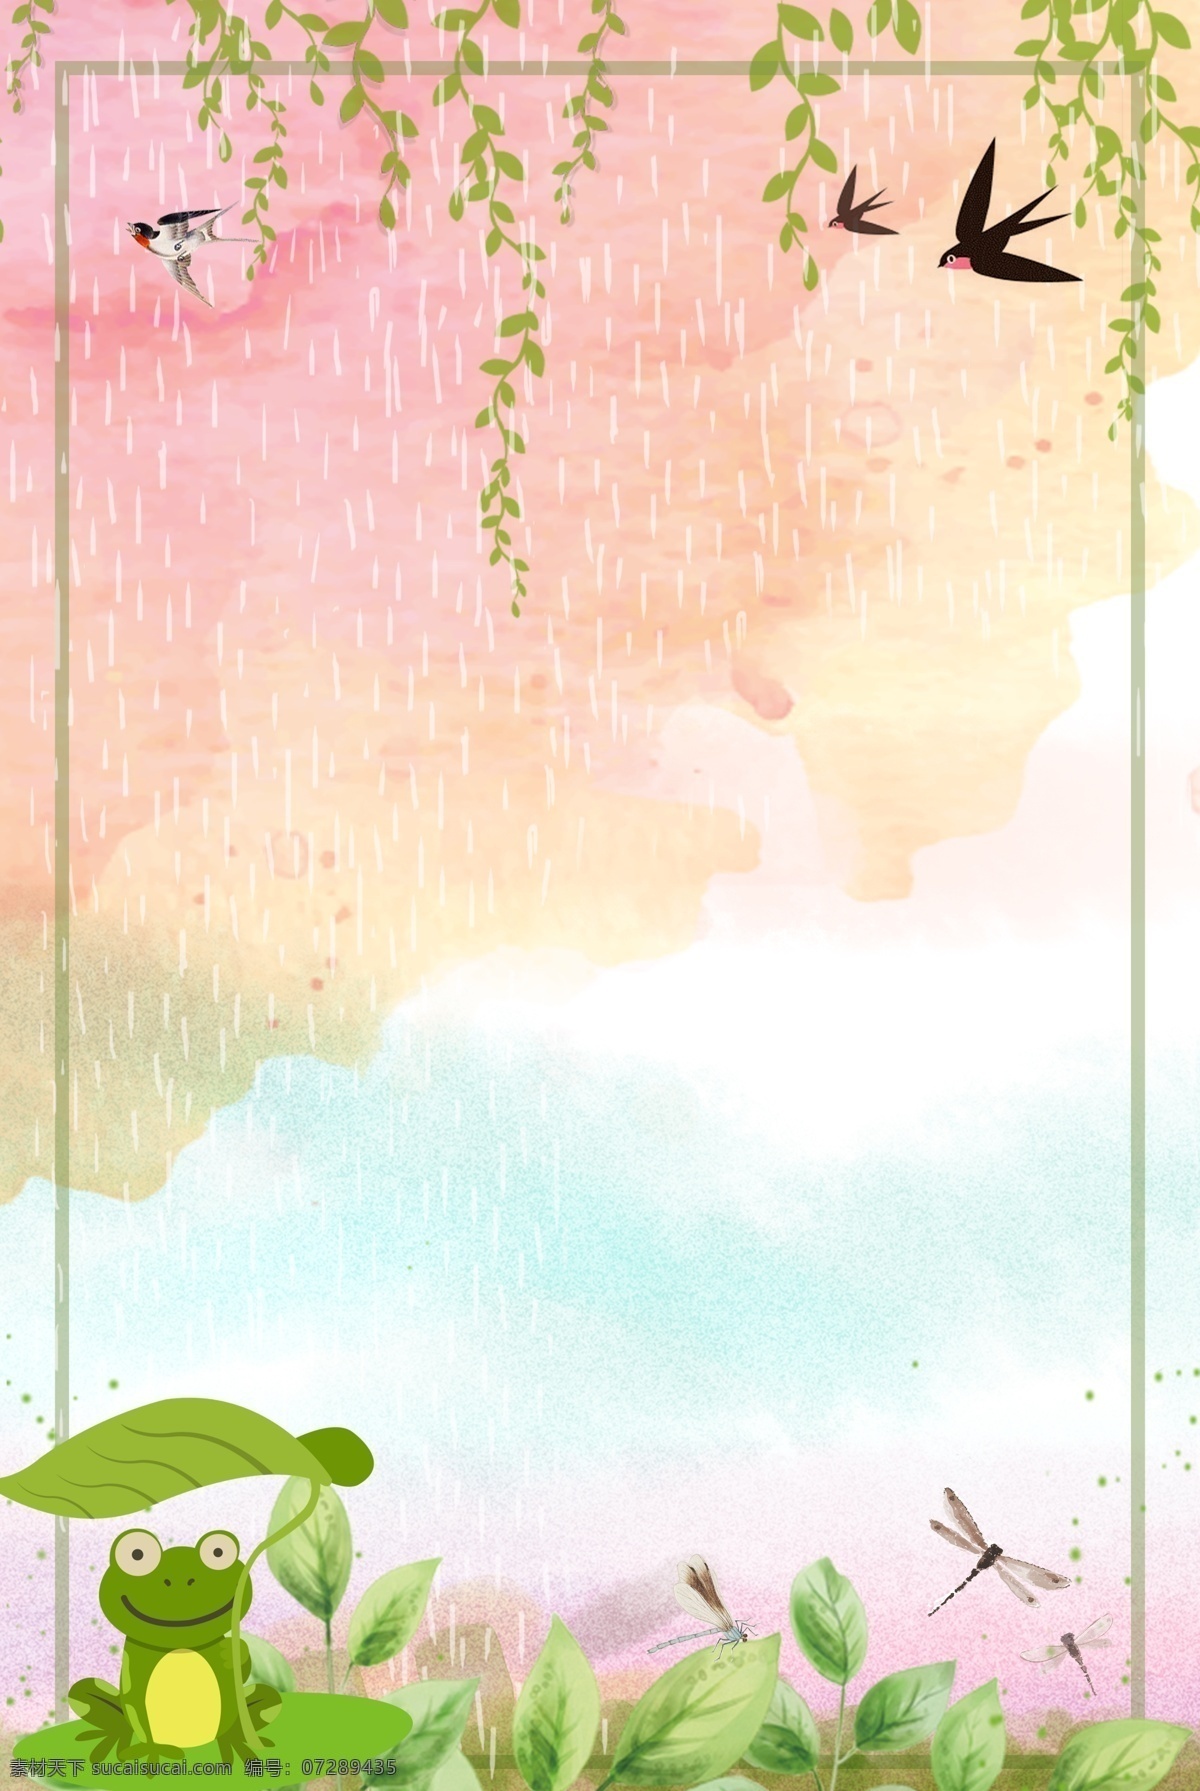 雨水 下雨 传统节日 二十四节气 绿 藤 青蛙 燕子 插画风 小清新 简约 水塘 绿藤 蜻蜓